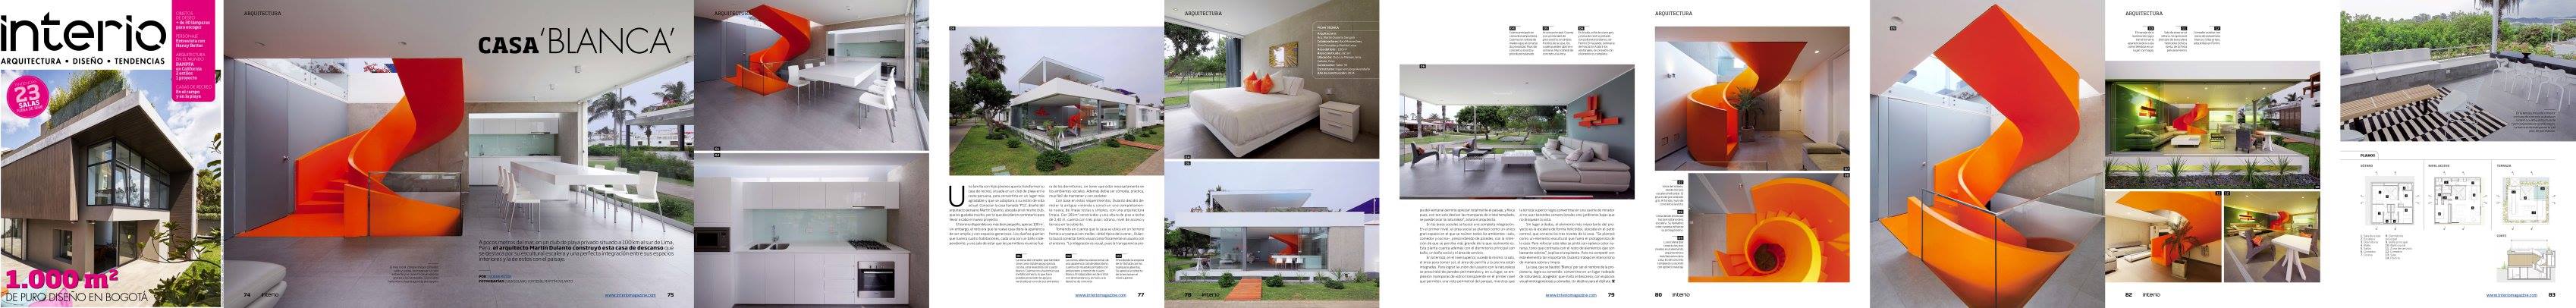 Casa Blanca Interio Magazine COLOMBIA  abril 2016